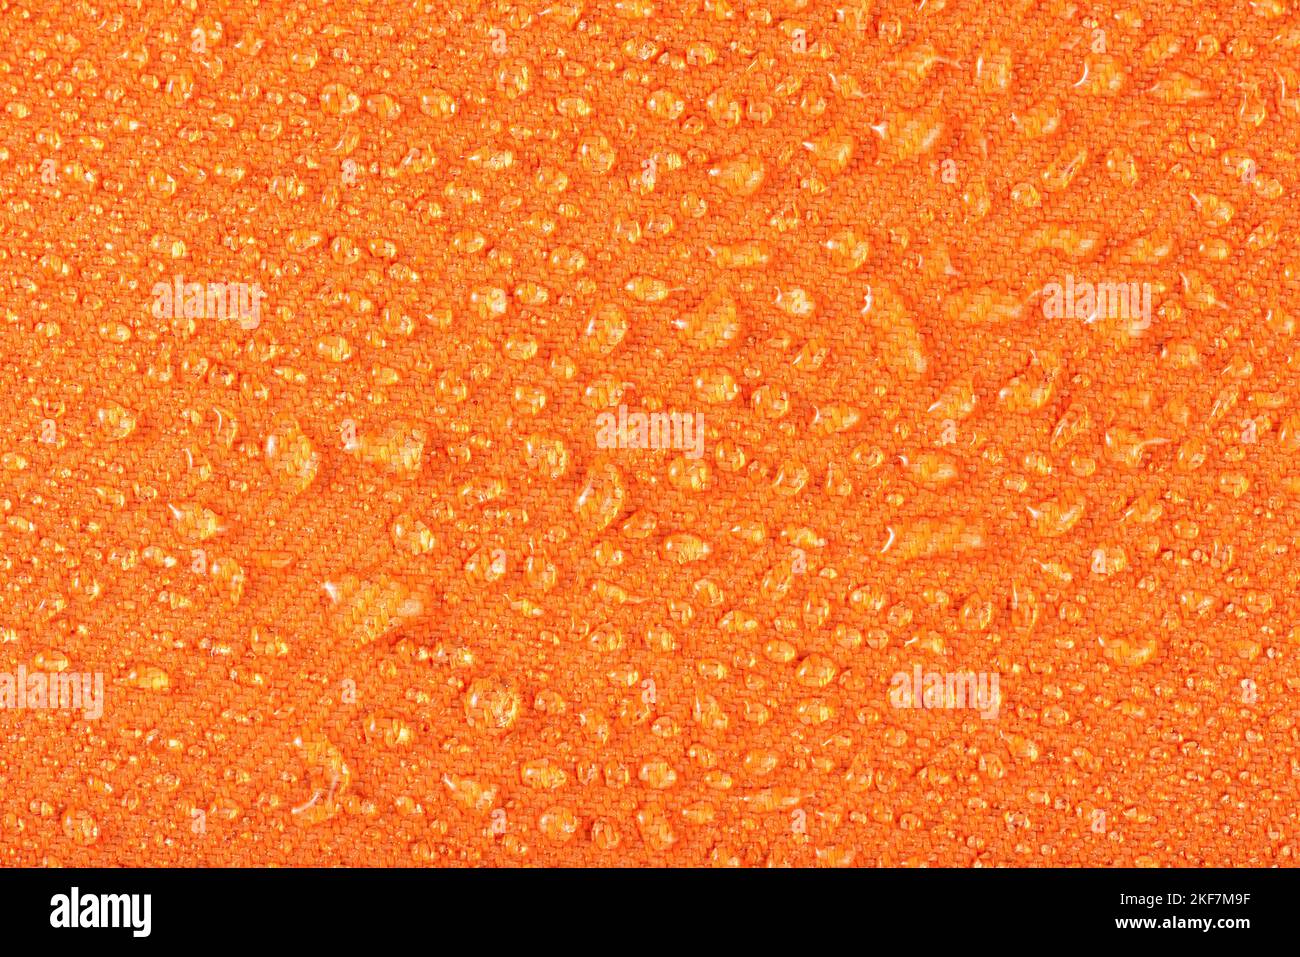 Wasserdichte Kleidung oder Polstermöbel aus wasserdichten Textilien. Wassertropfen auf orangefarbene Textilien mit wasserabweisenden Eigenschaften. Stockfoto